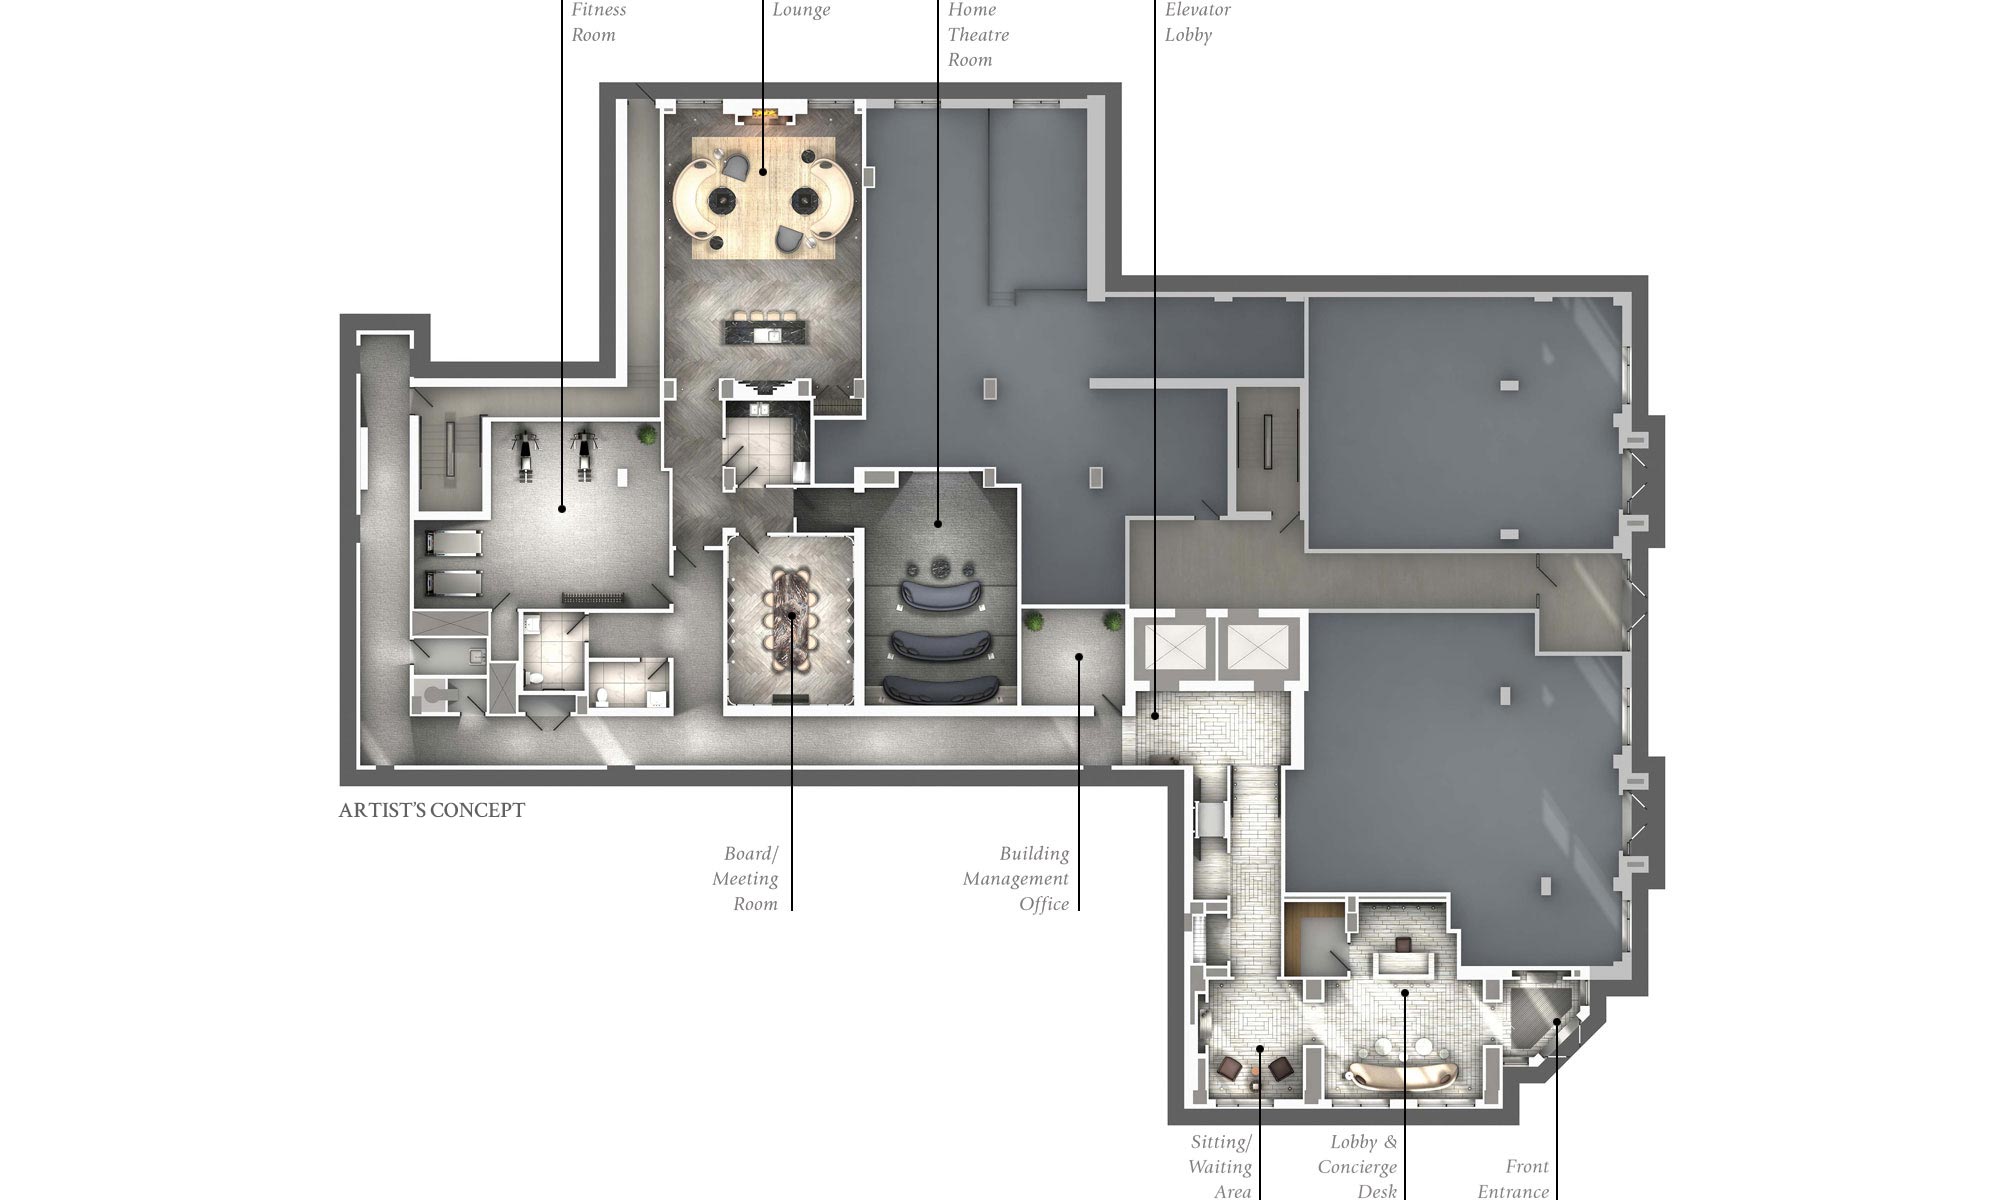 Ground Floor Amenities Plan